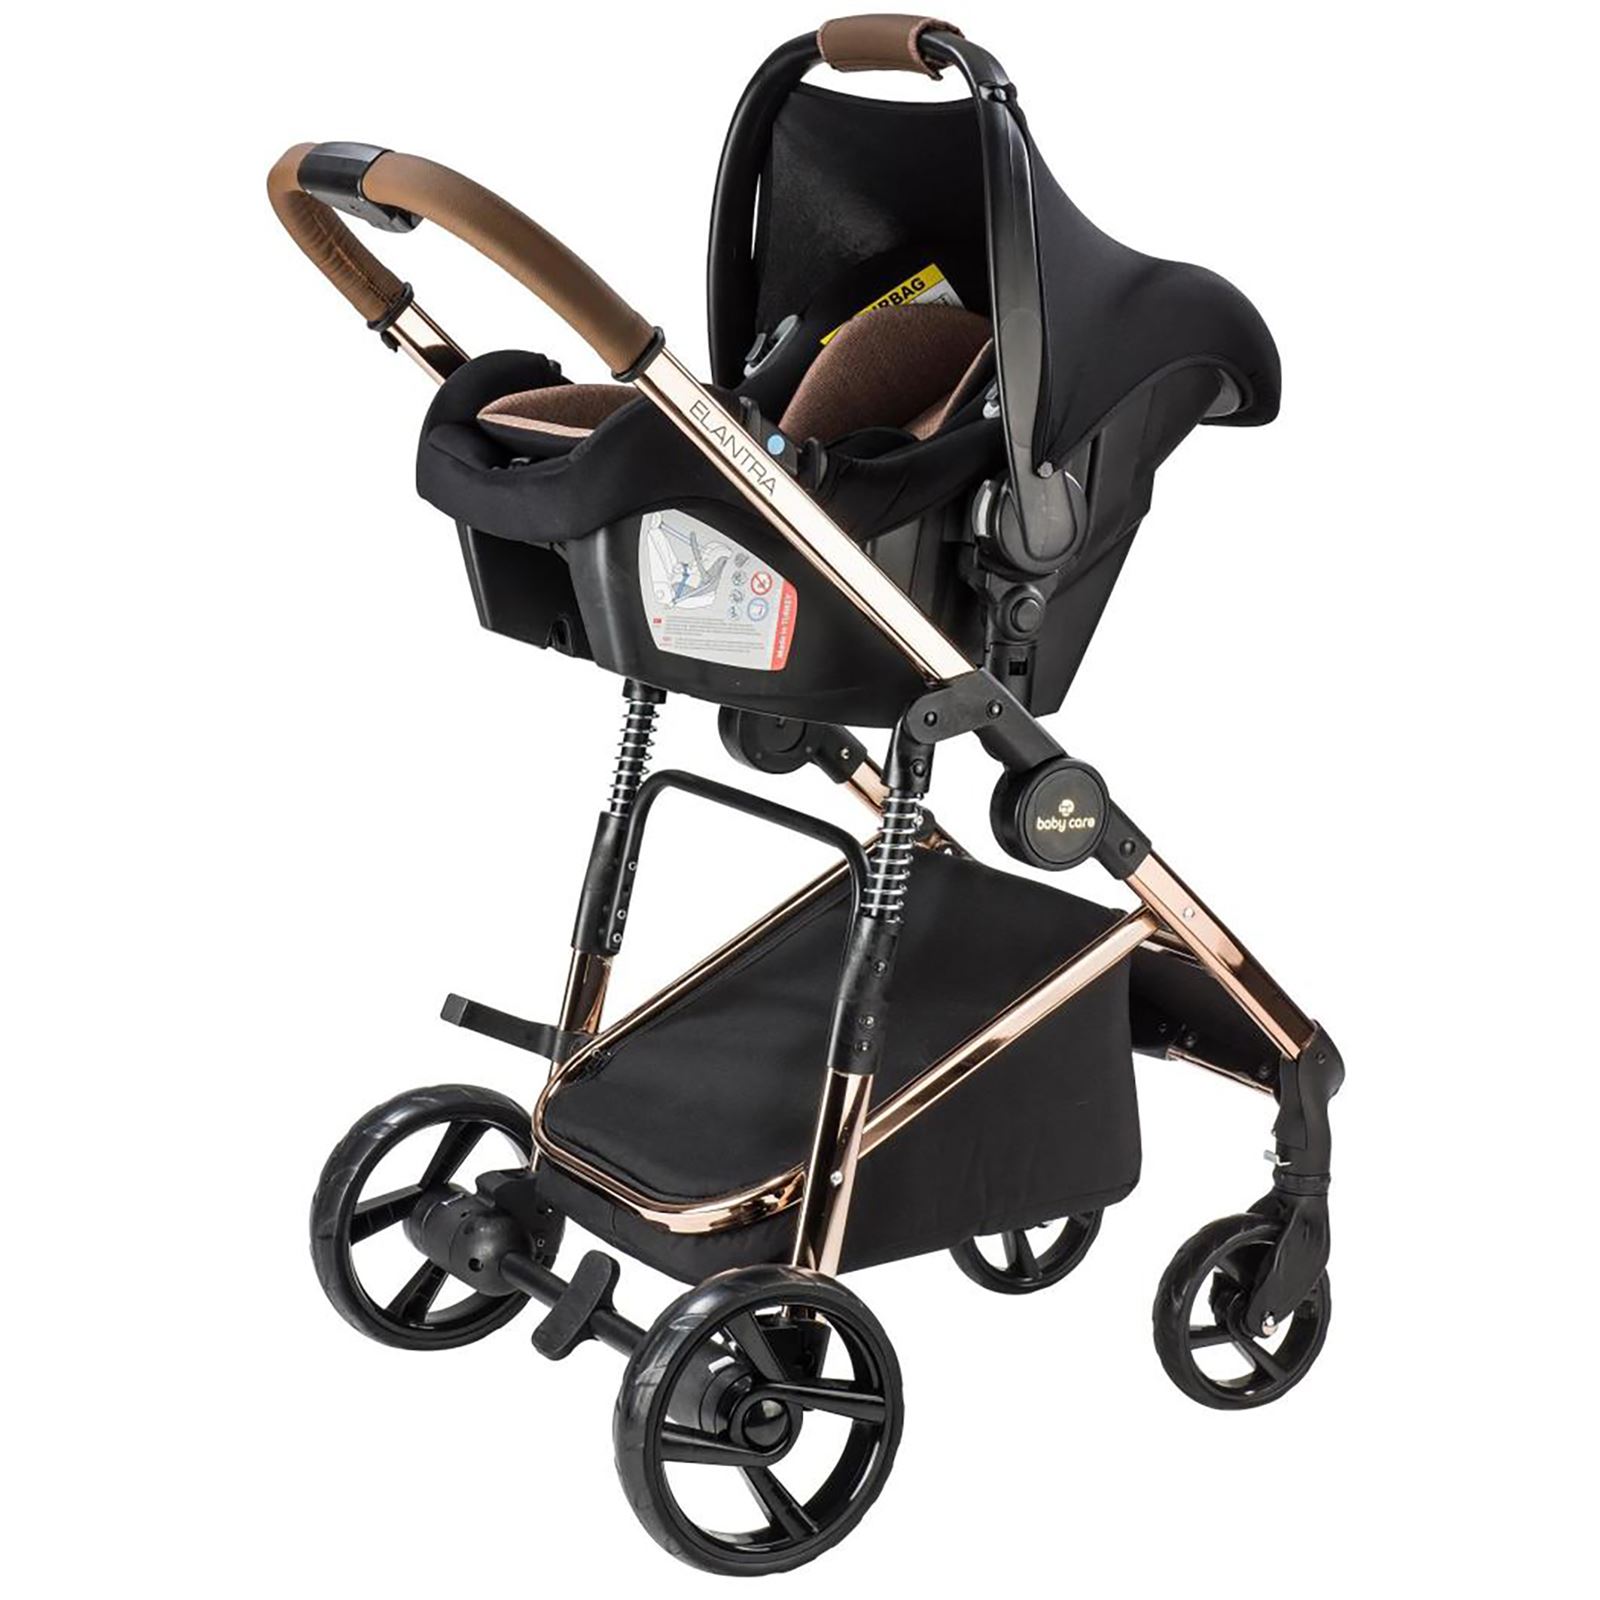 BabyCare Elantra Premium Travel Puset Sistem Bebek Arabası Kahve